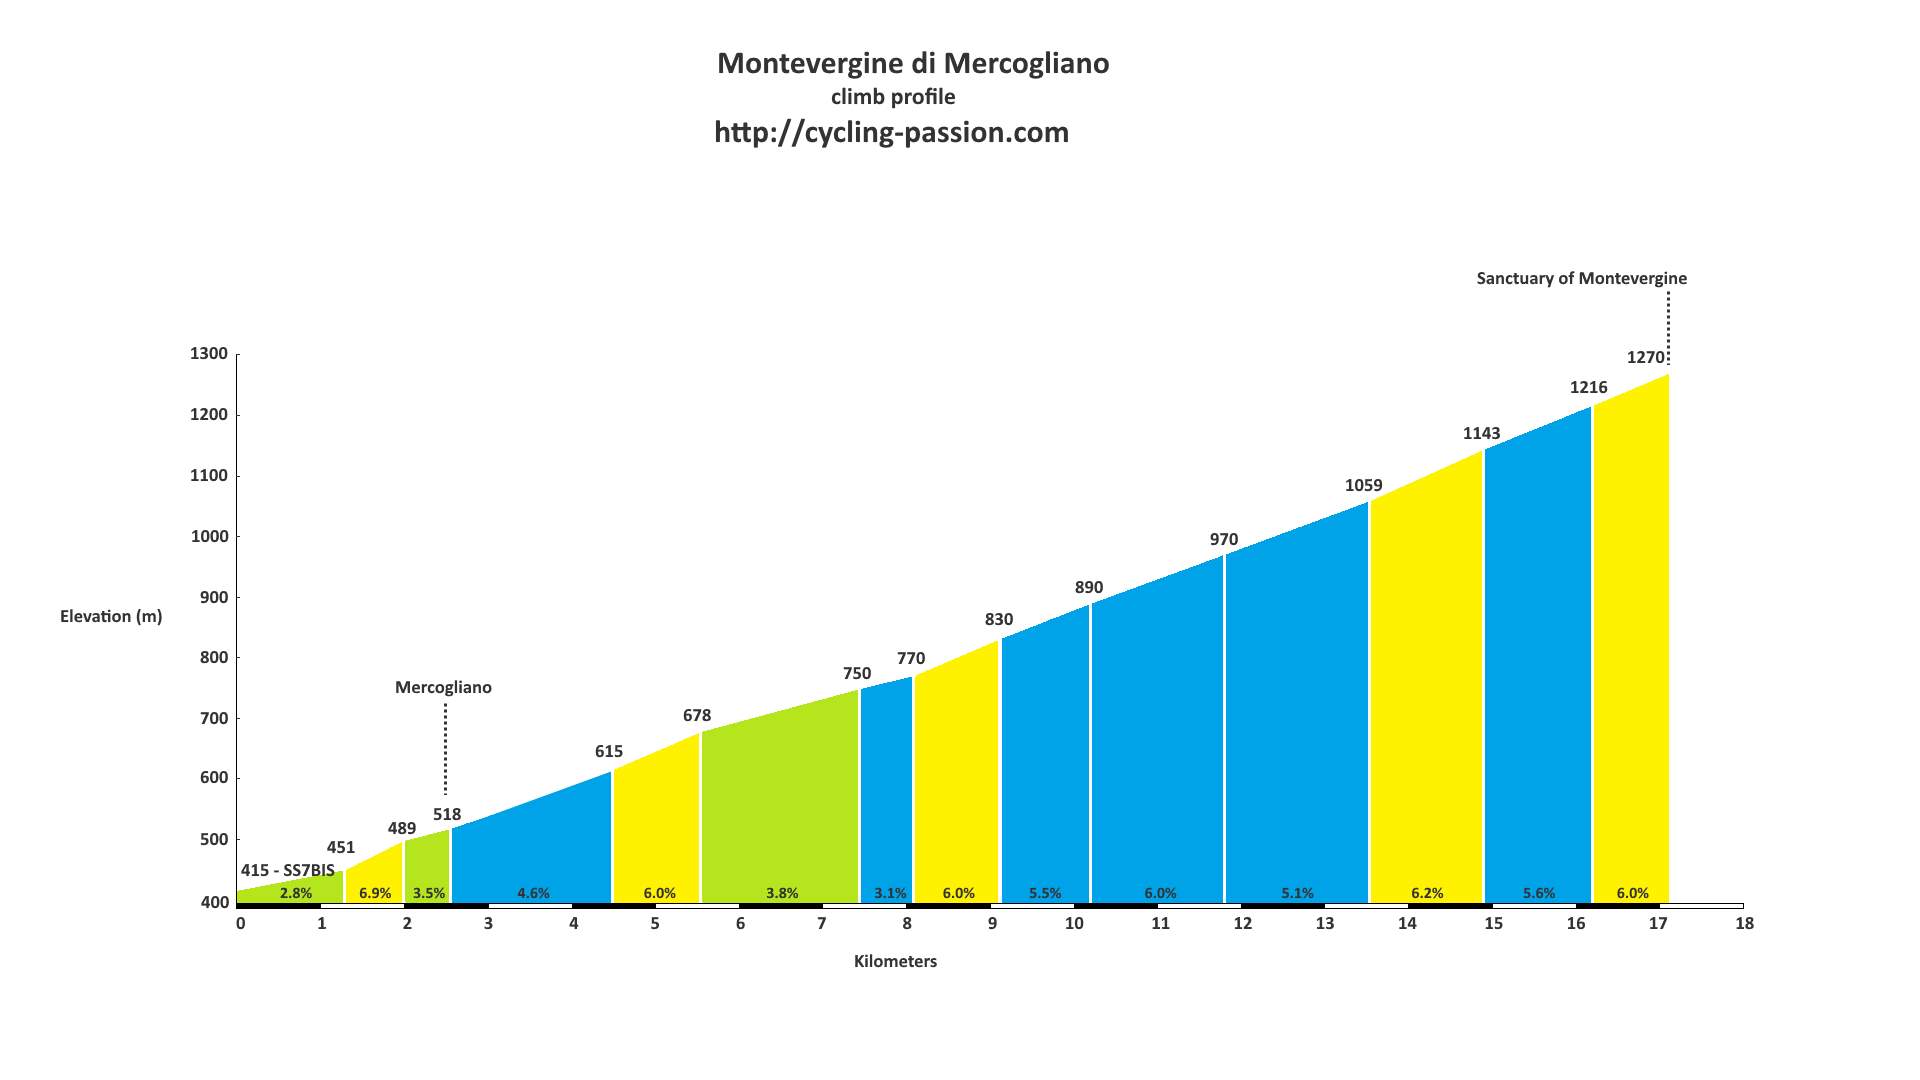 Montevergine di Mercogliano climb profile